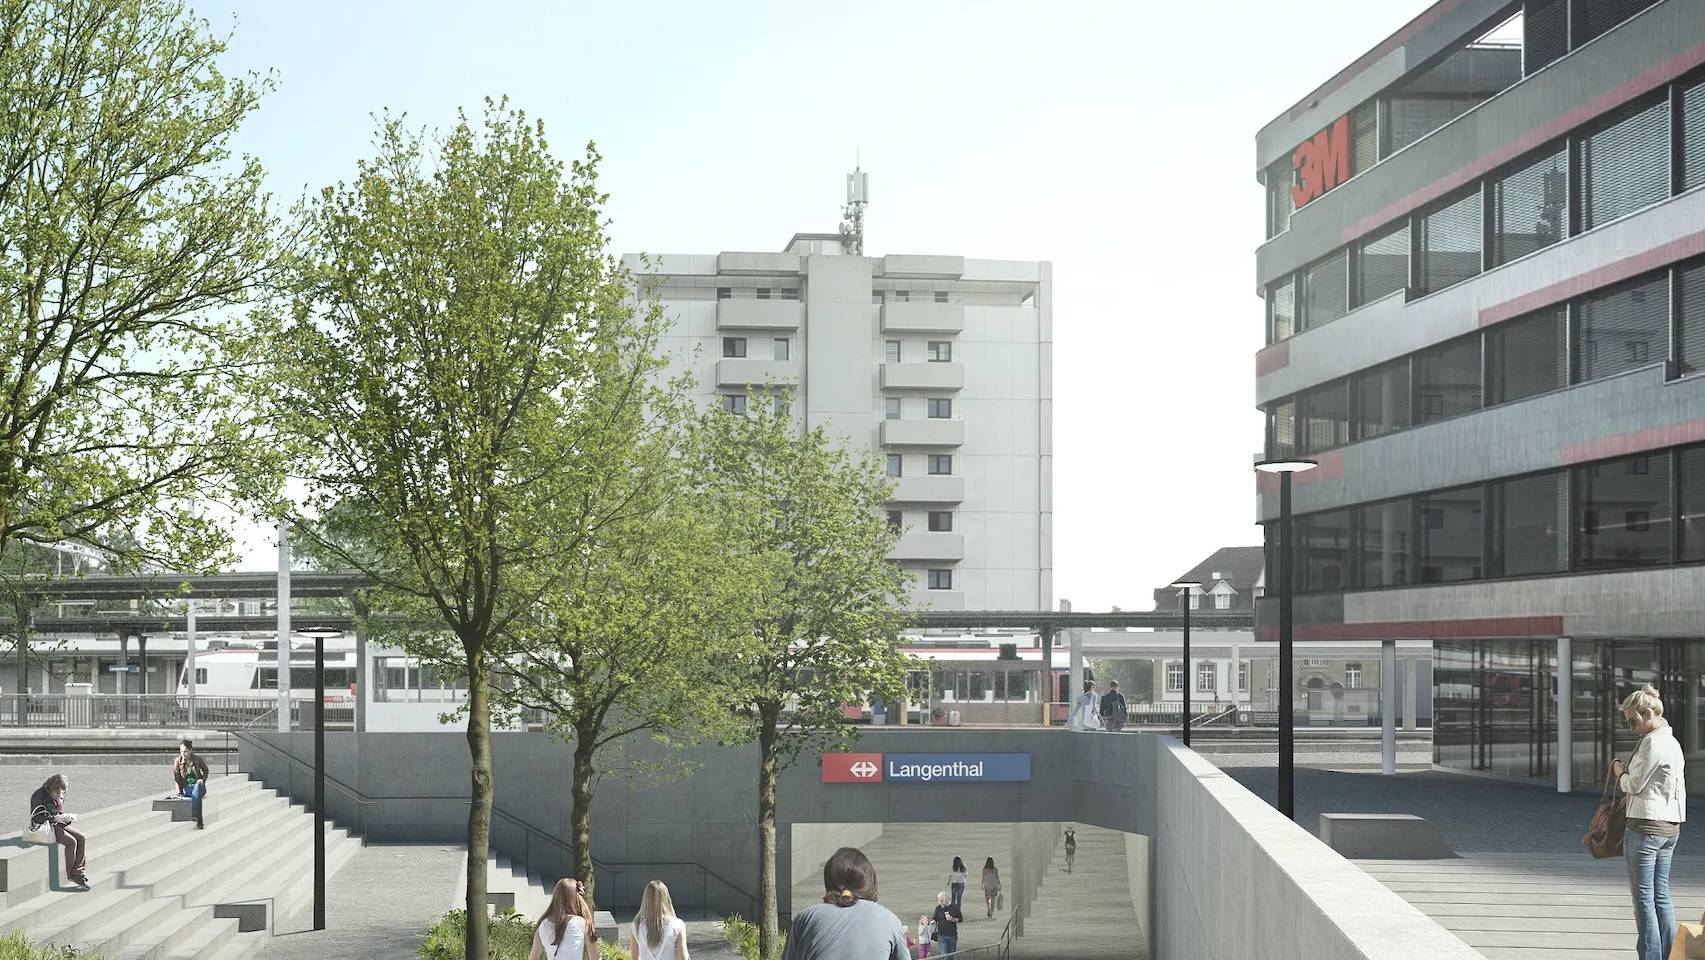 Der Bahnhof Langenthal soll künftig einen barrierefreien Bahnzugang bieten.